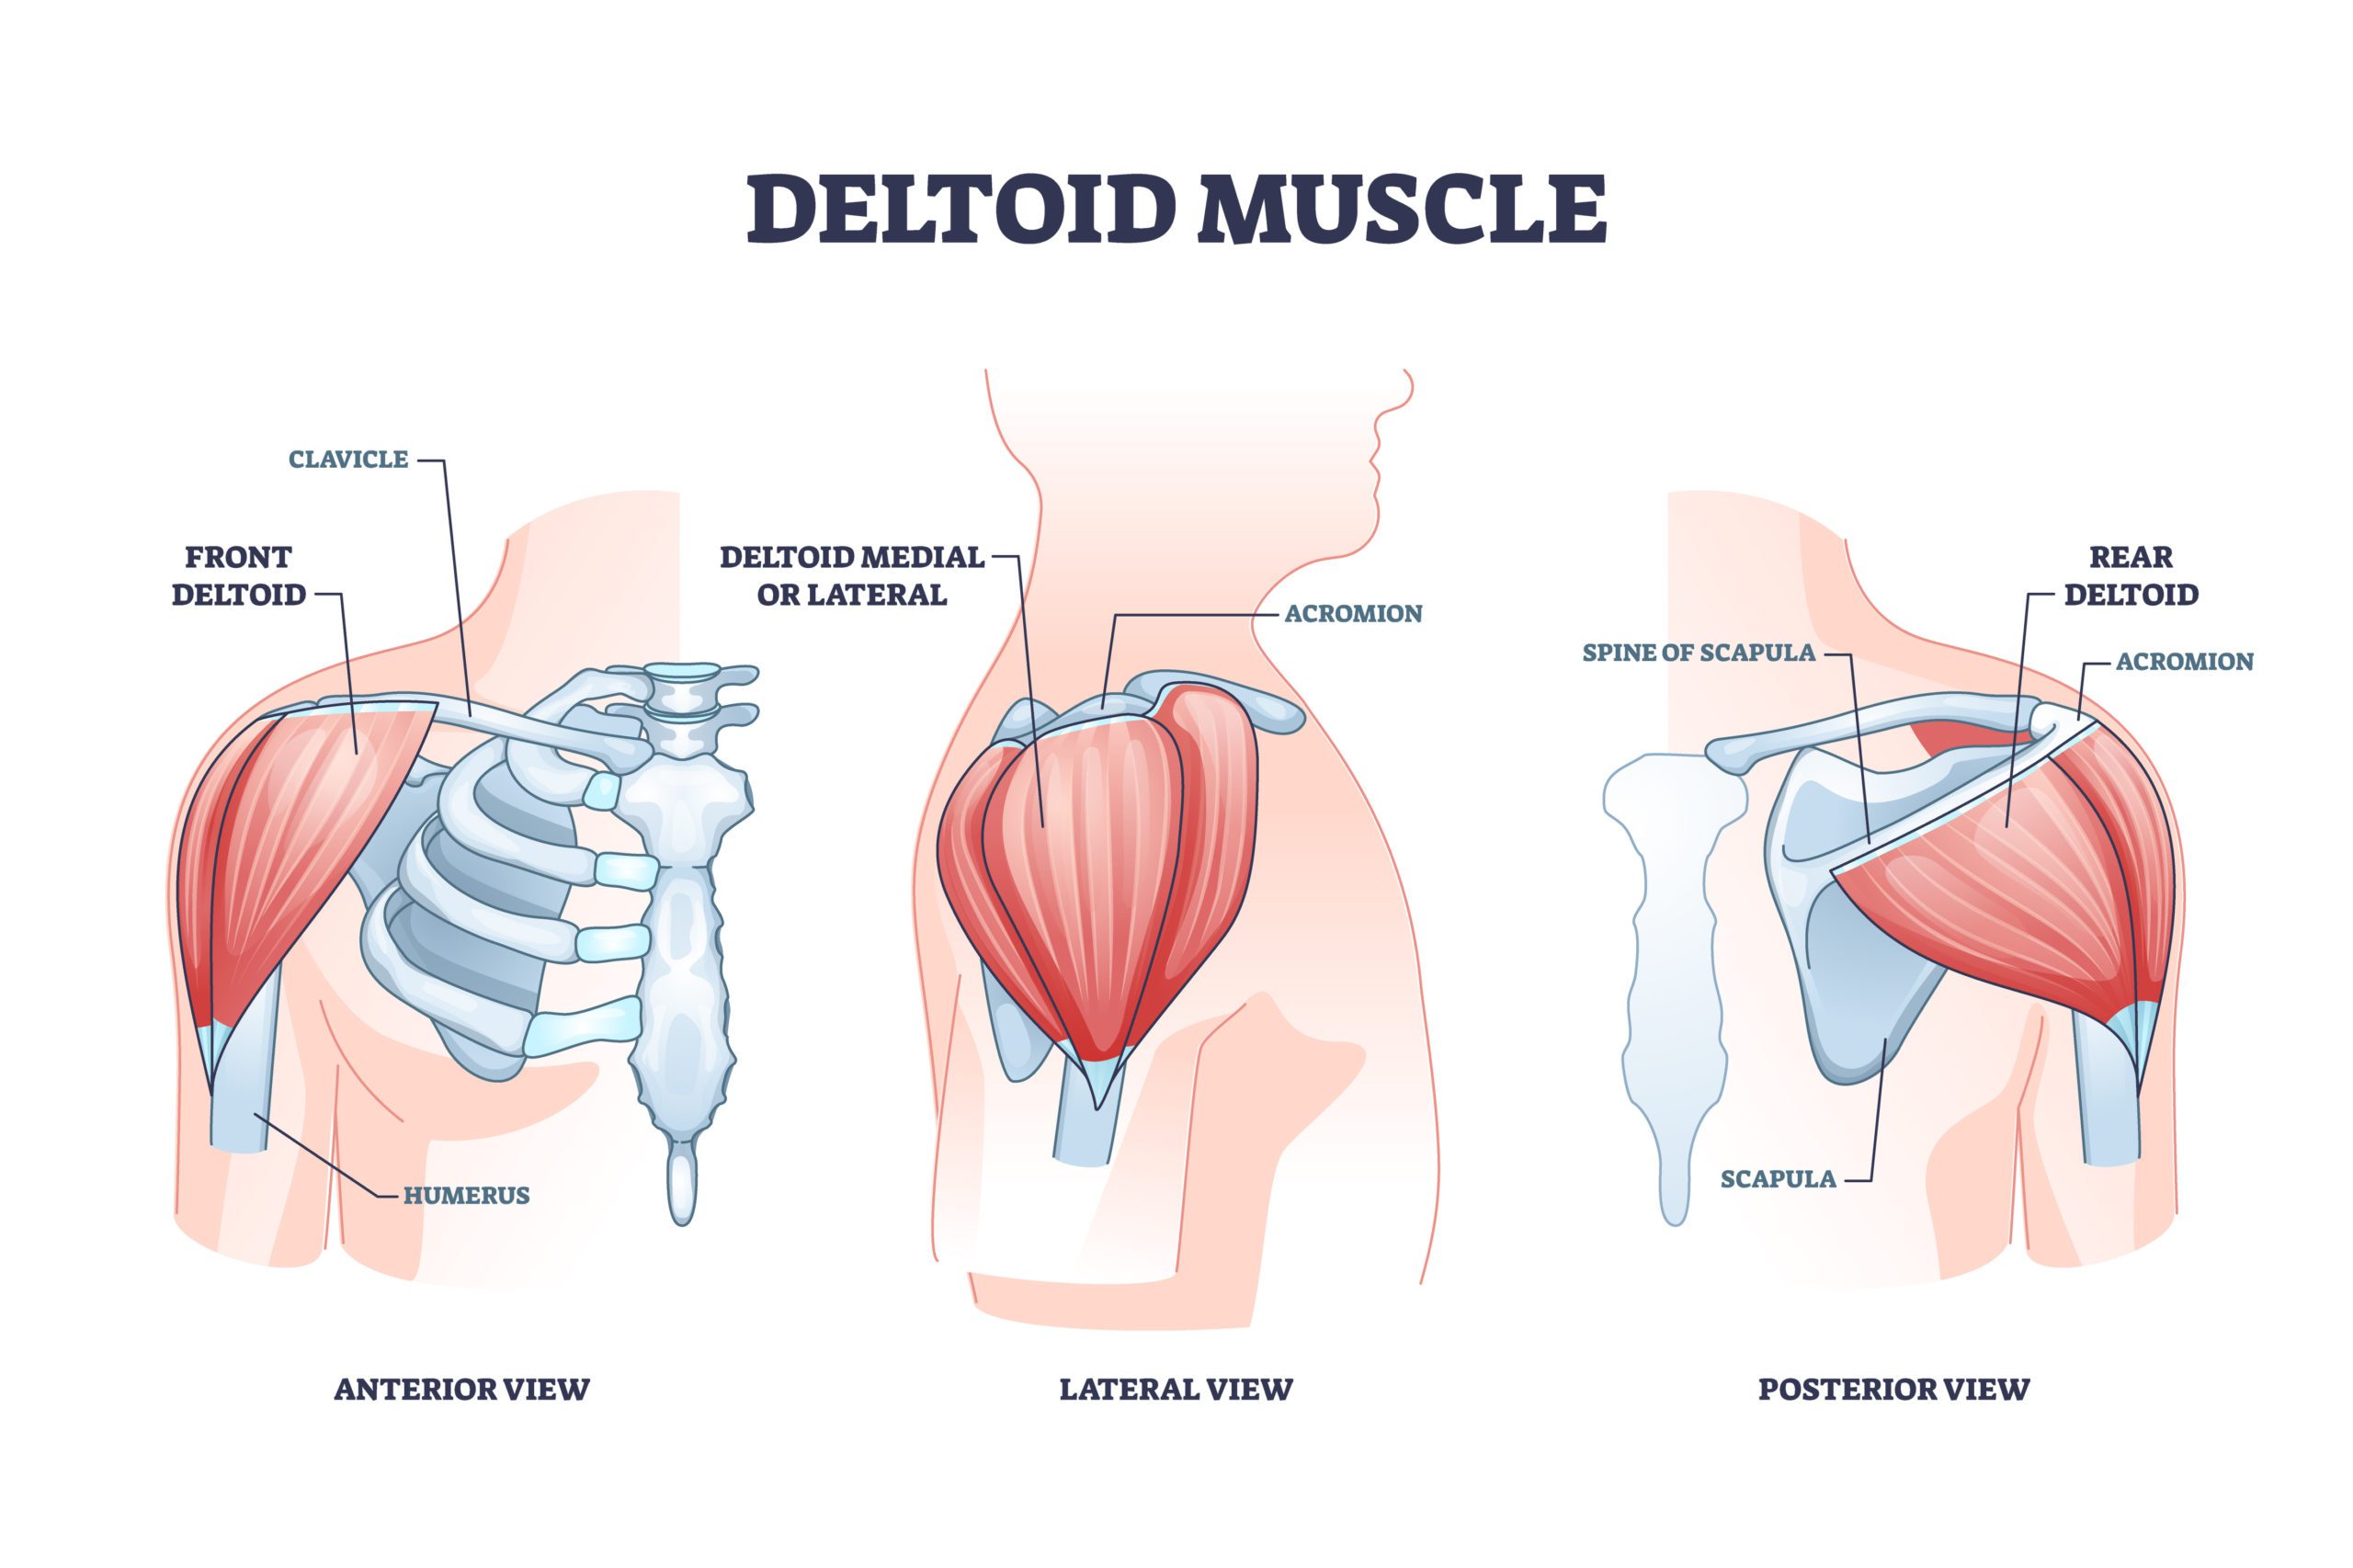 Deltoid muscle and skeletal shoulder anatomical structure